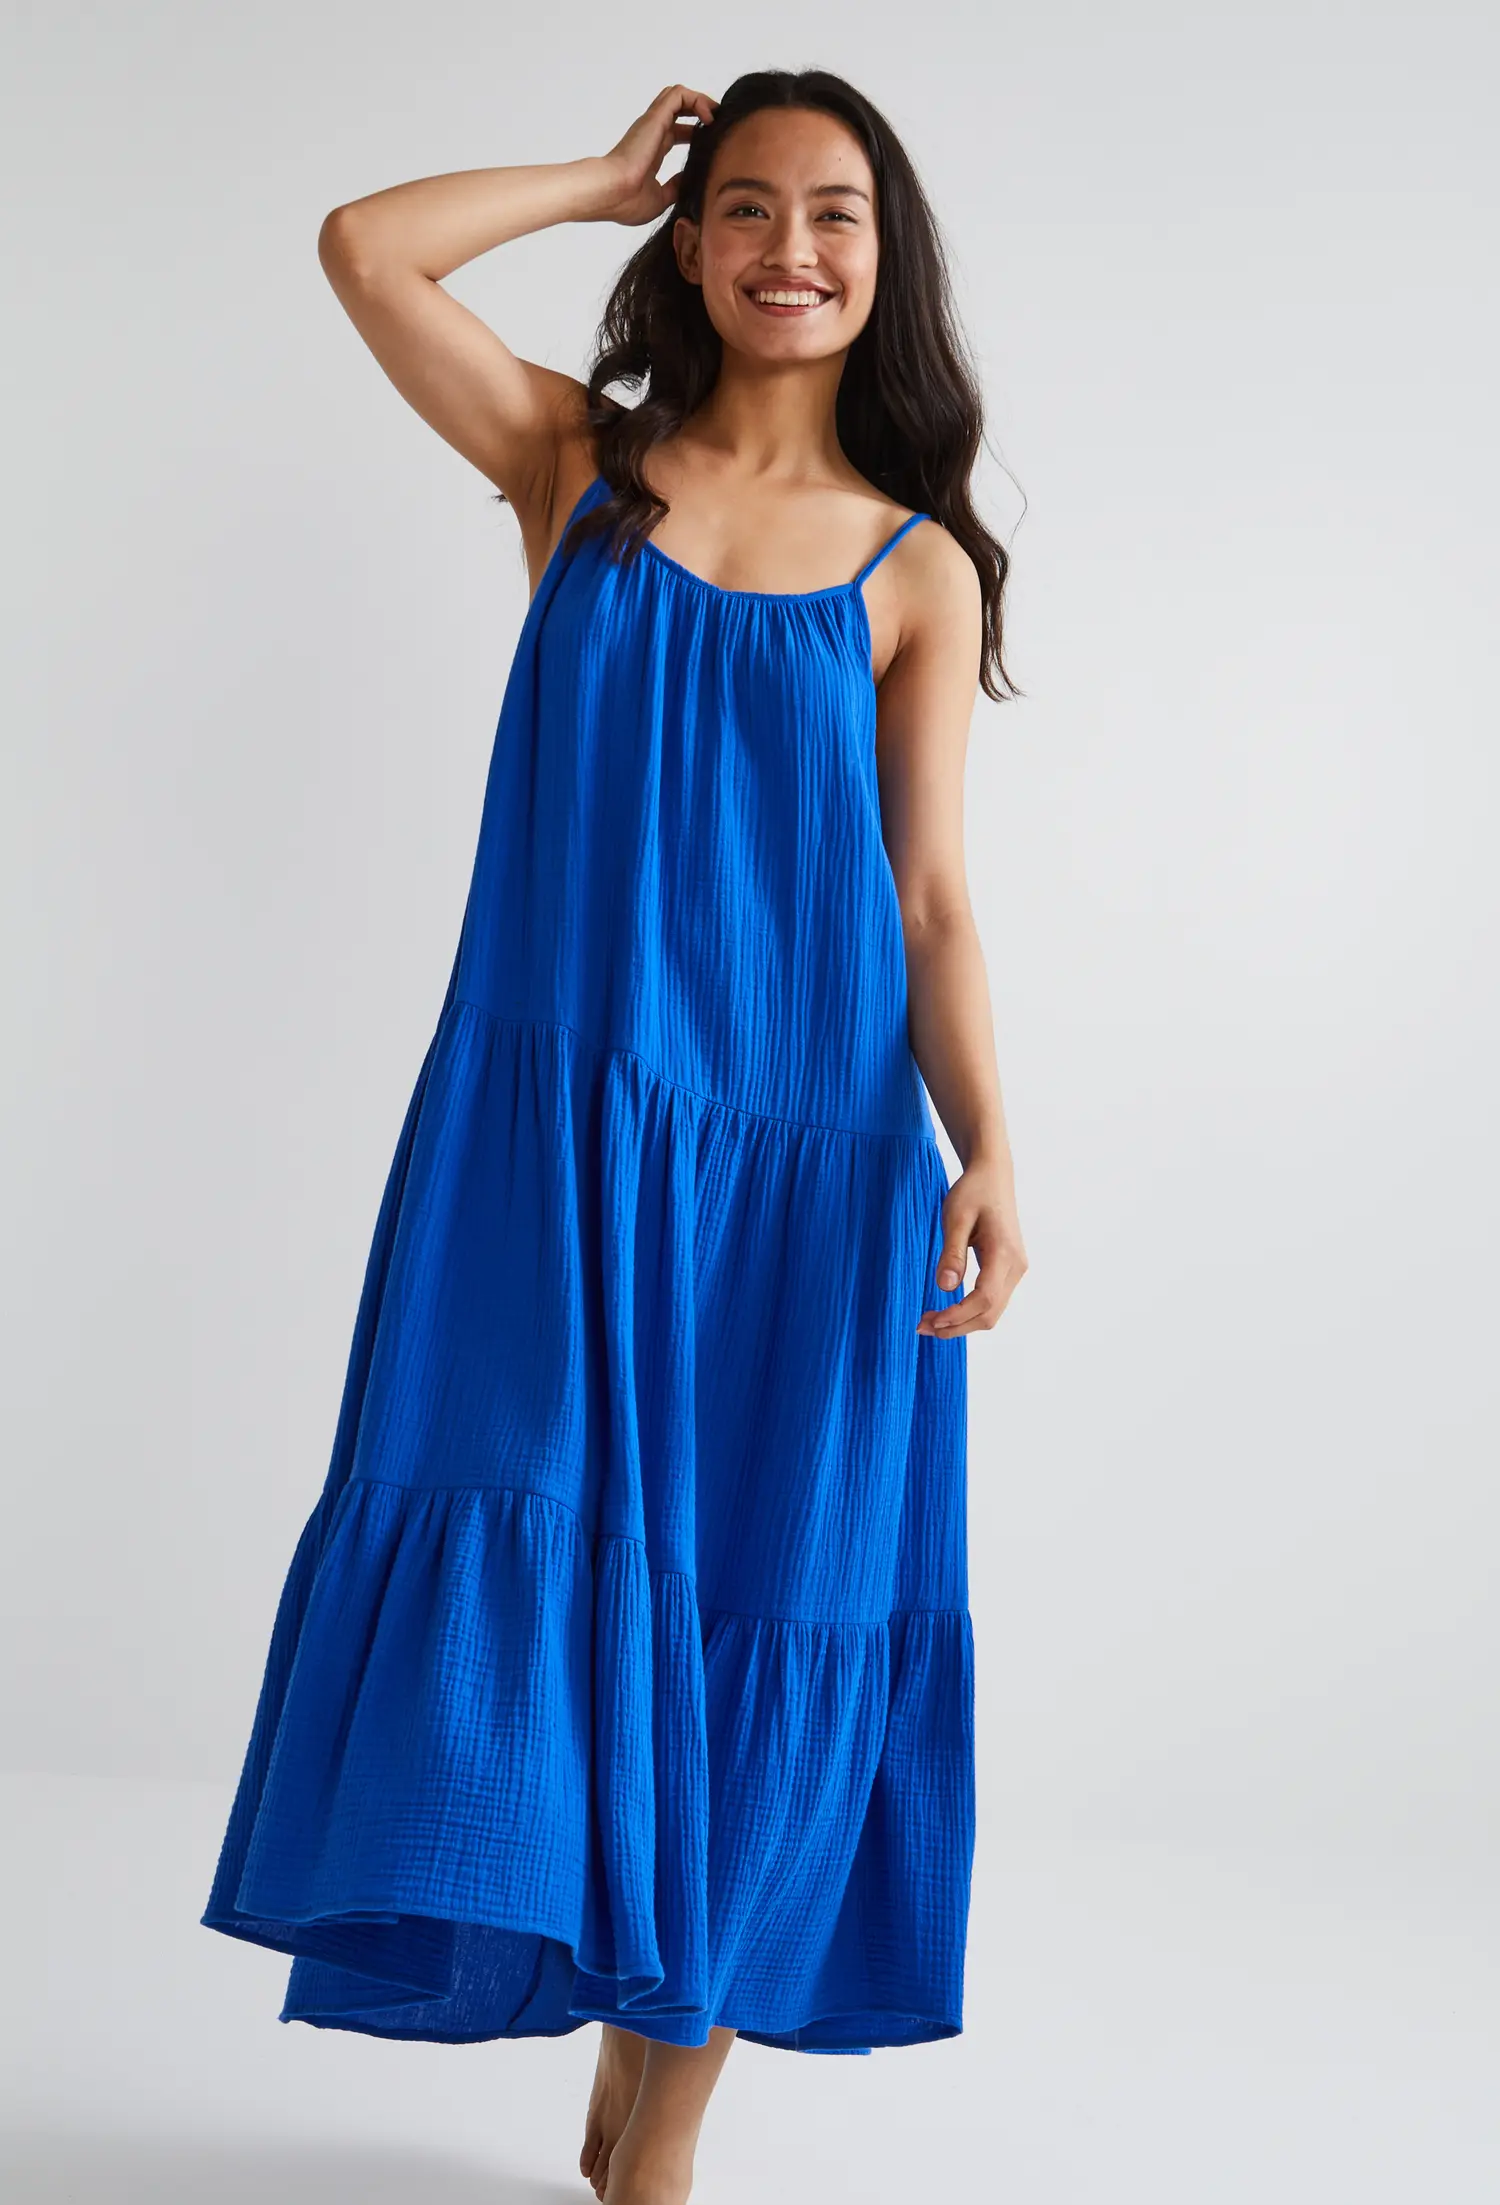 robe bleue femme